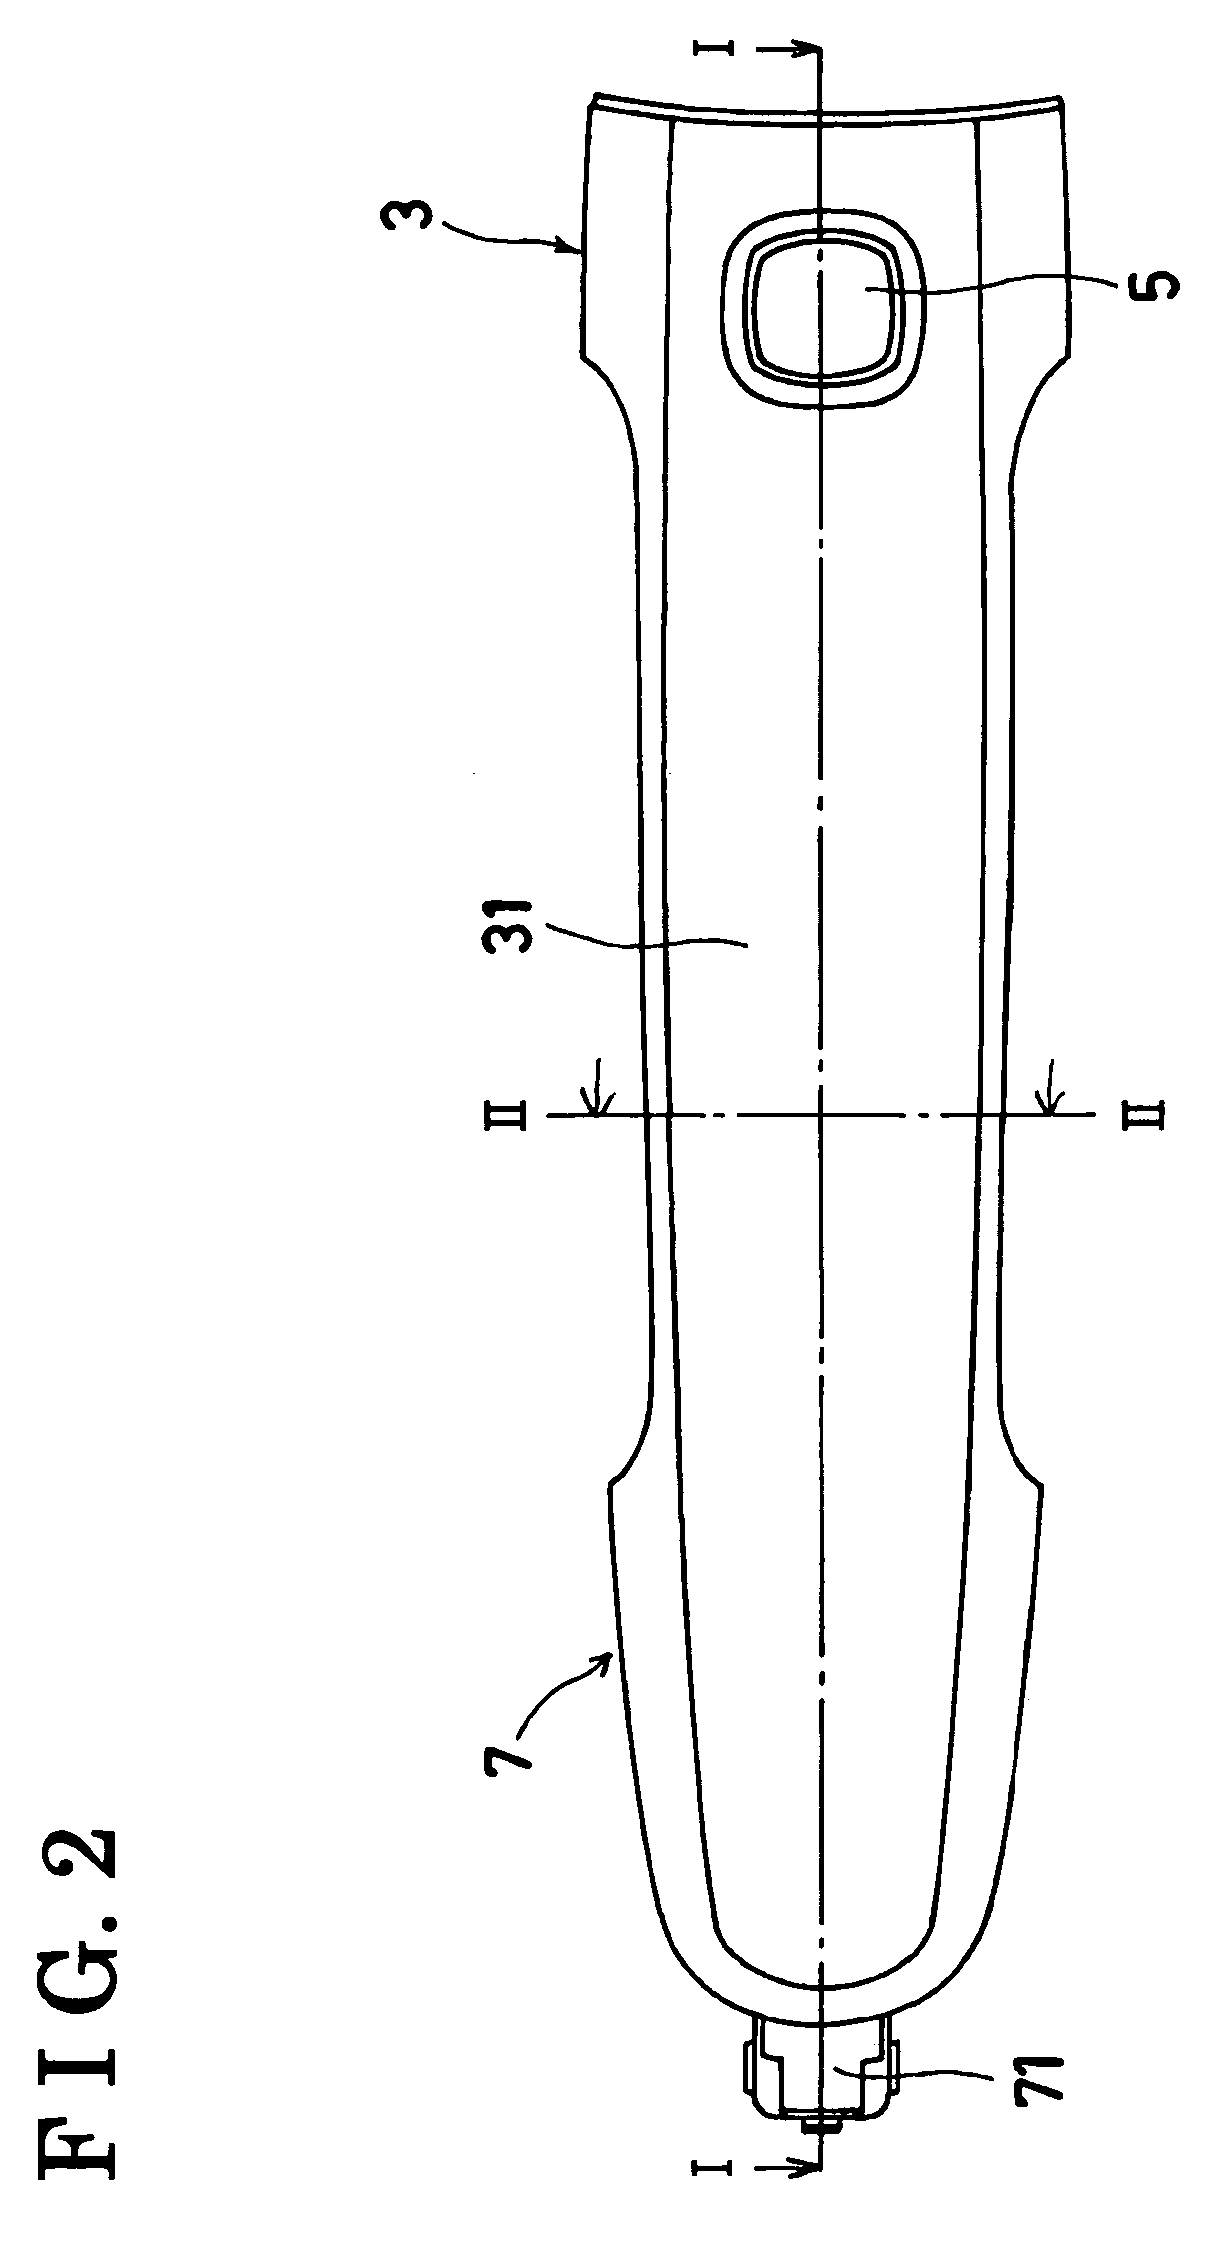 Vehicle door handle apparatus